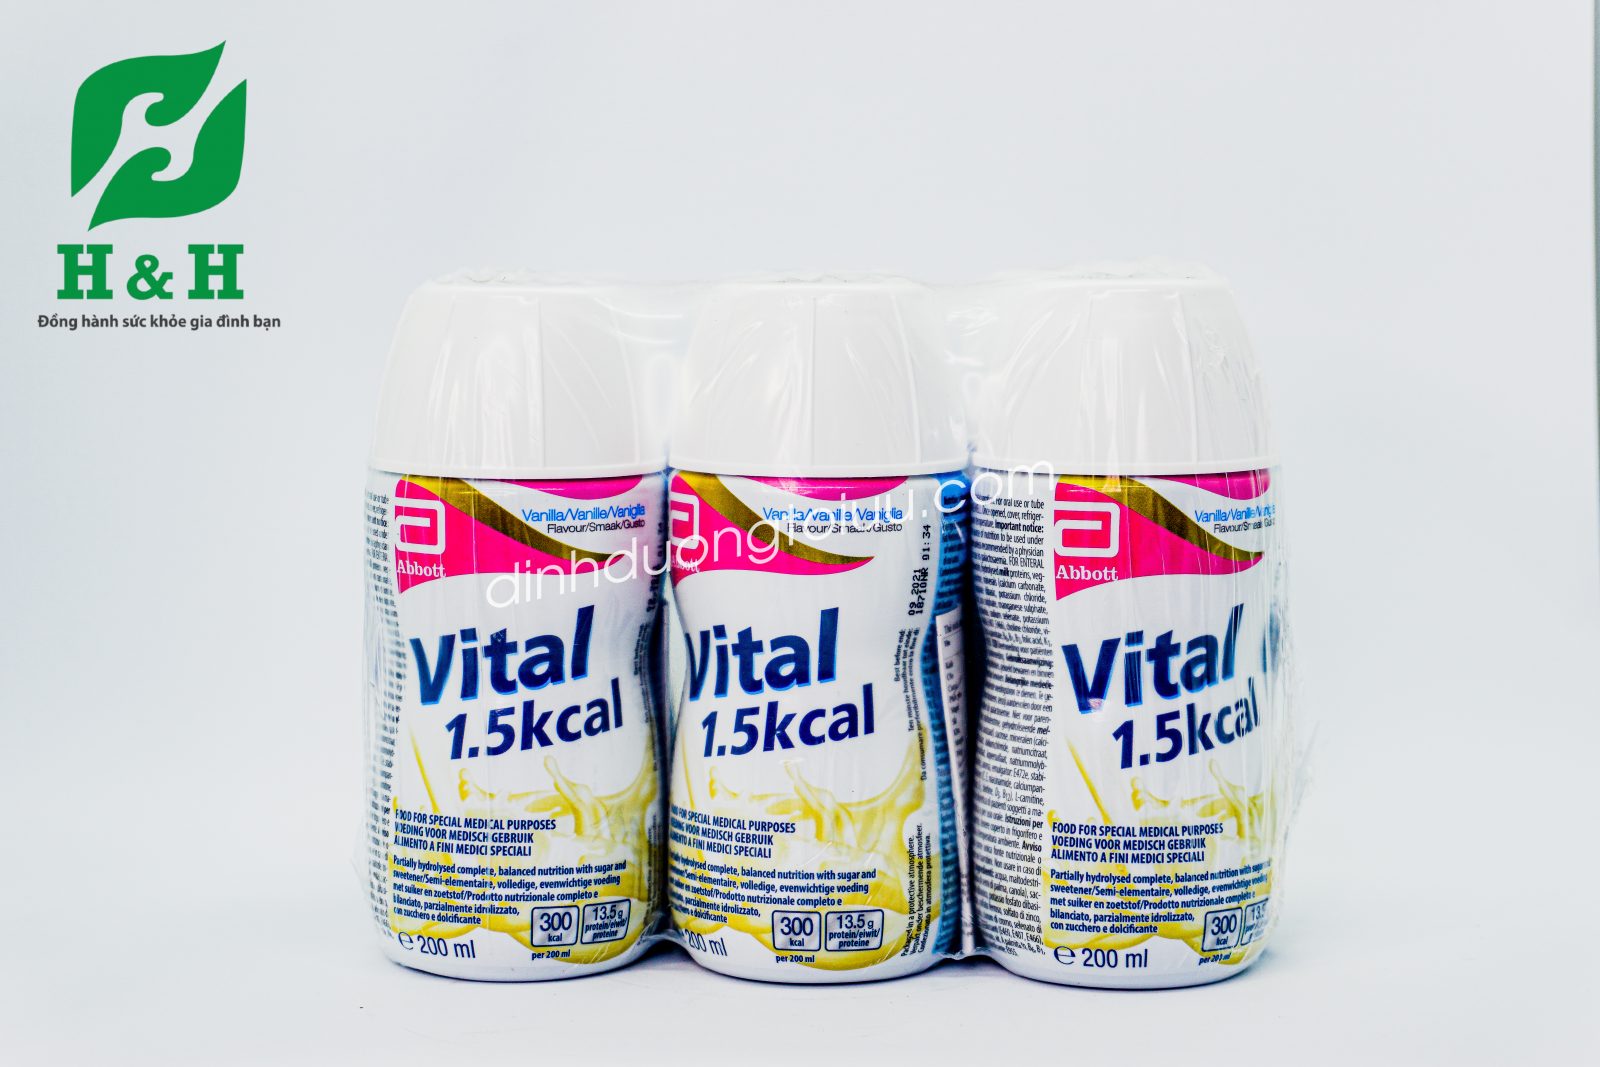 Sữa Vital 1.5 Kcal - Vital giá bao nhiêu? Dinh dưỡng dễ hấp thu dành cho người cao tuổi